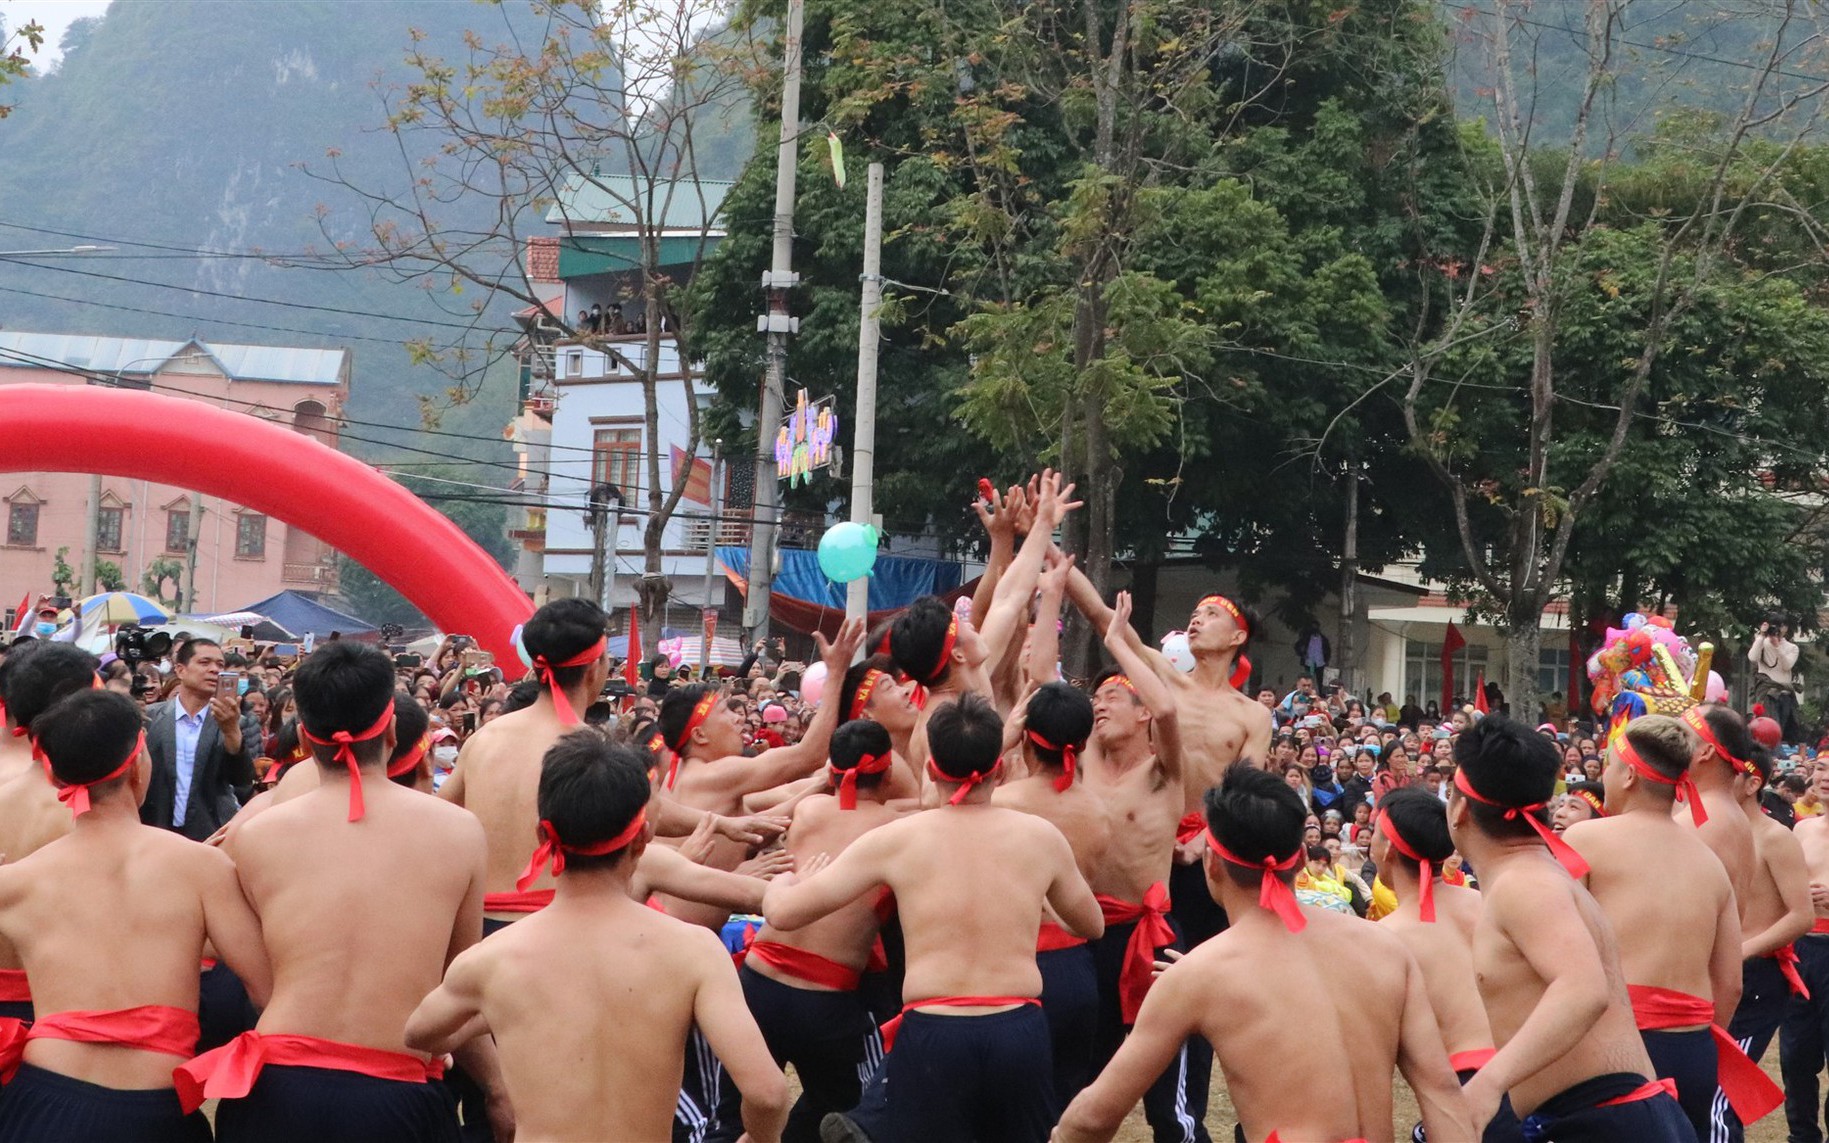 Đây là trò chơi dân gian hút khách xem tại một lễ hội mùa xuân ở Cao Bằng, tham gia toàn trai làng to khỏe